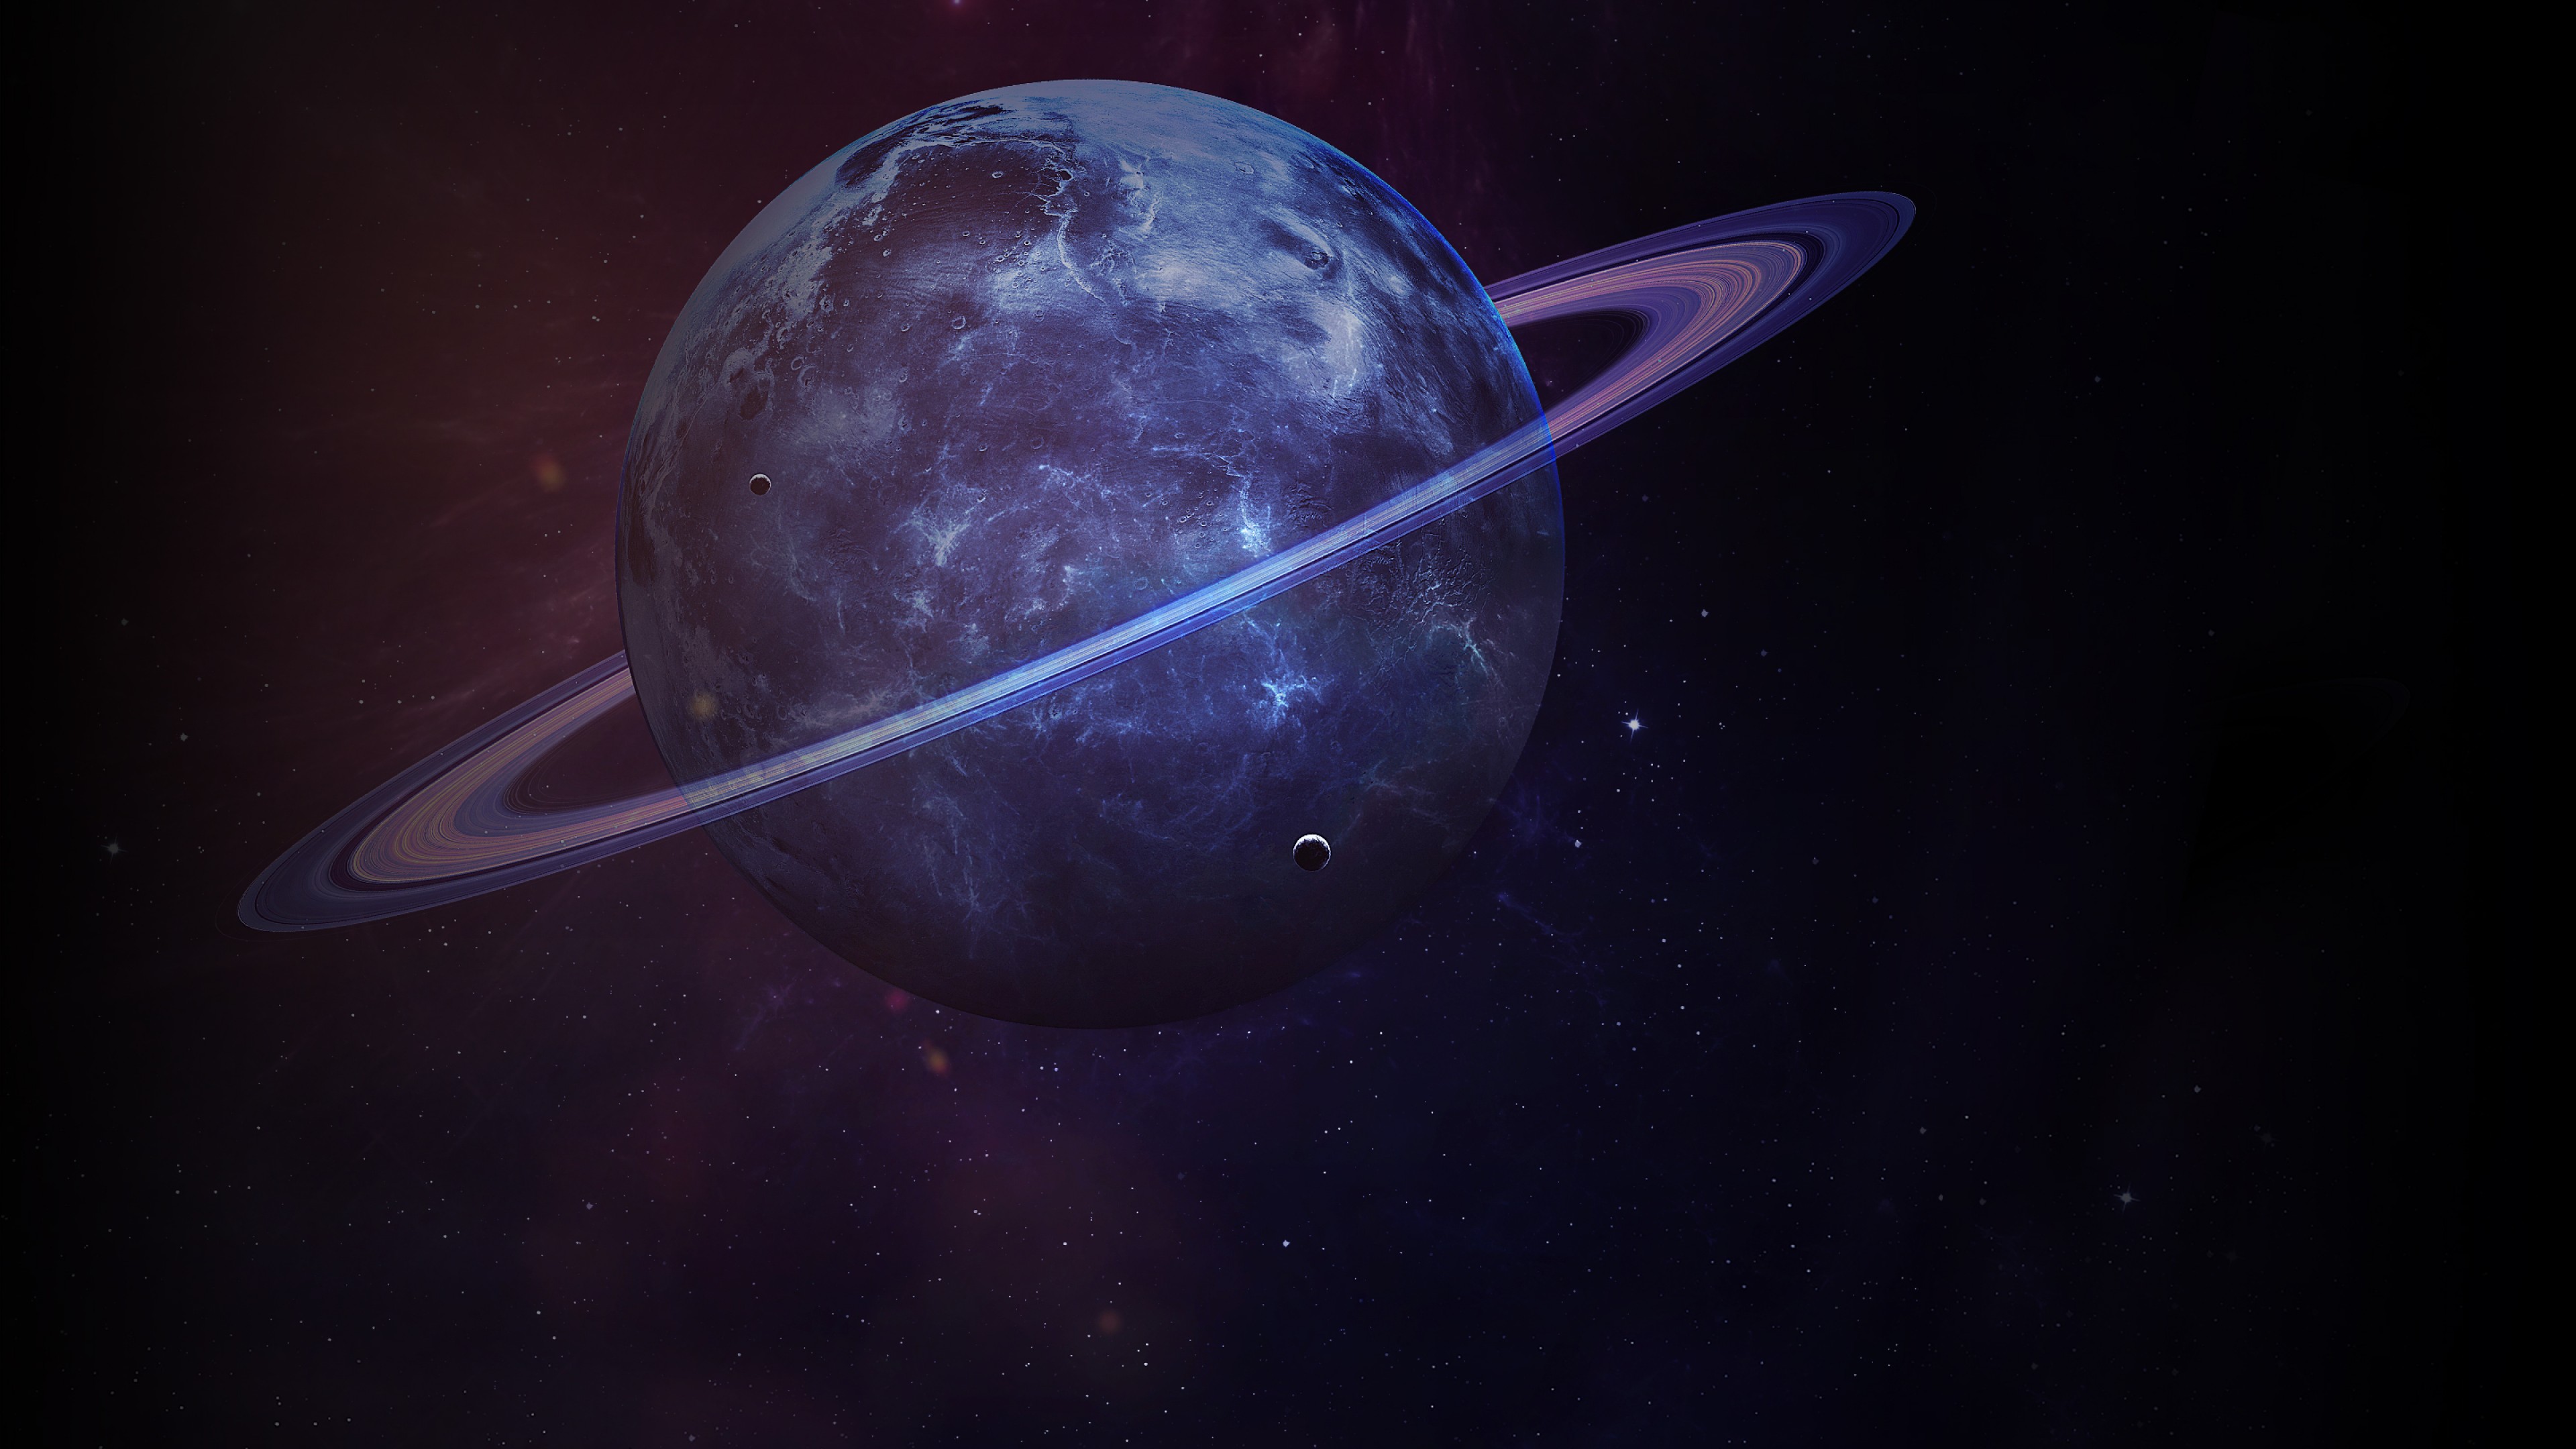  планета Сатурн с кольцами в космосе - обои для рабочего стола .